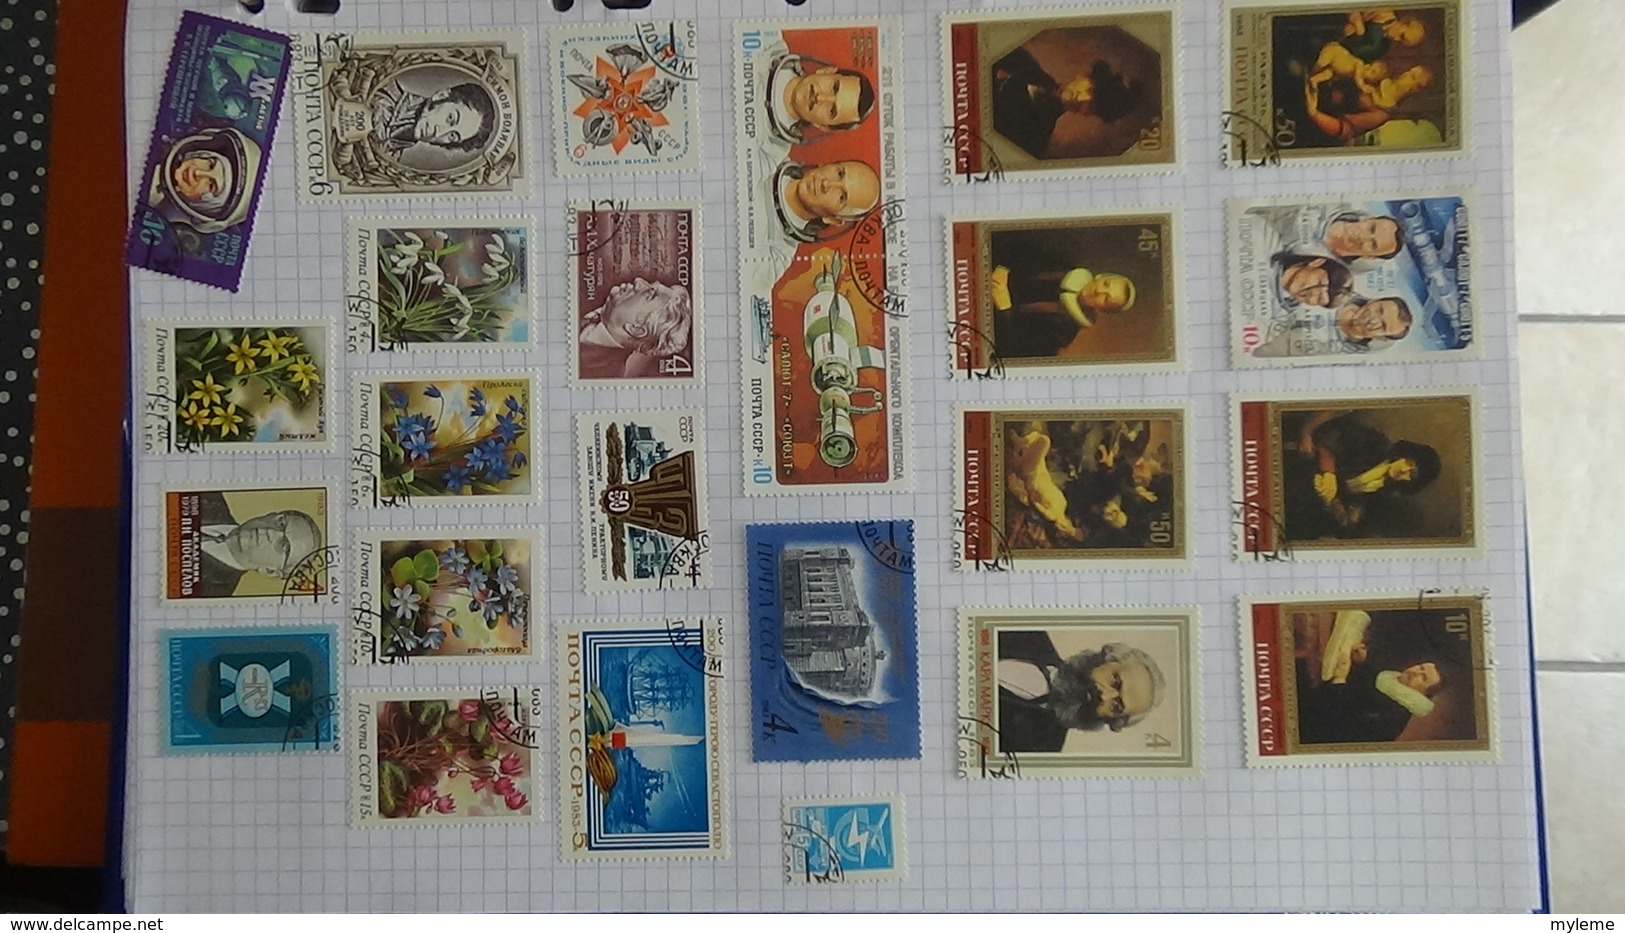 B384 Collection timbres oblitérés et environ 200 blocs d'URSS. A saisir !!!